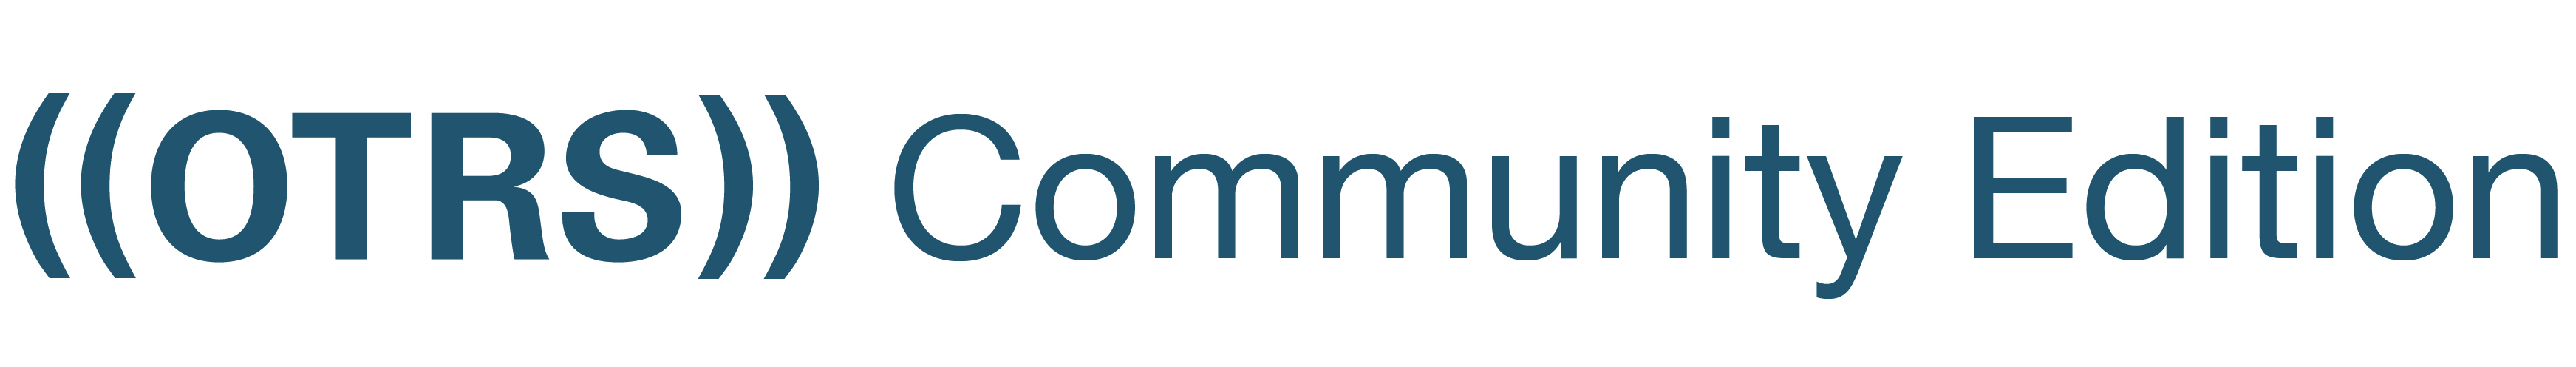 ((OTRS)) Community Edition logo